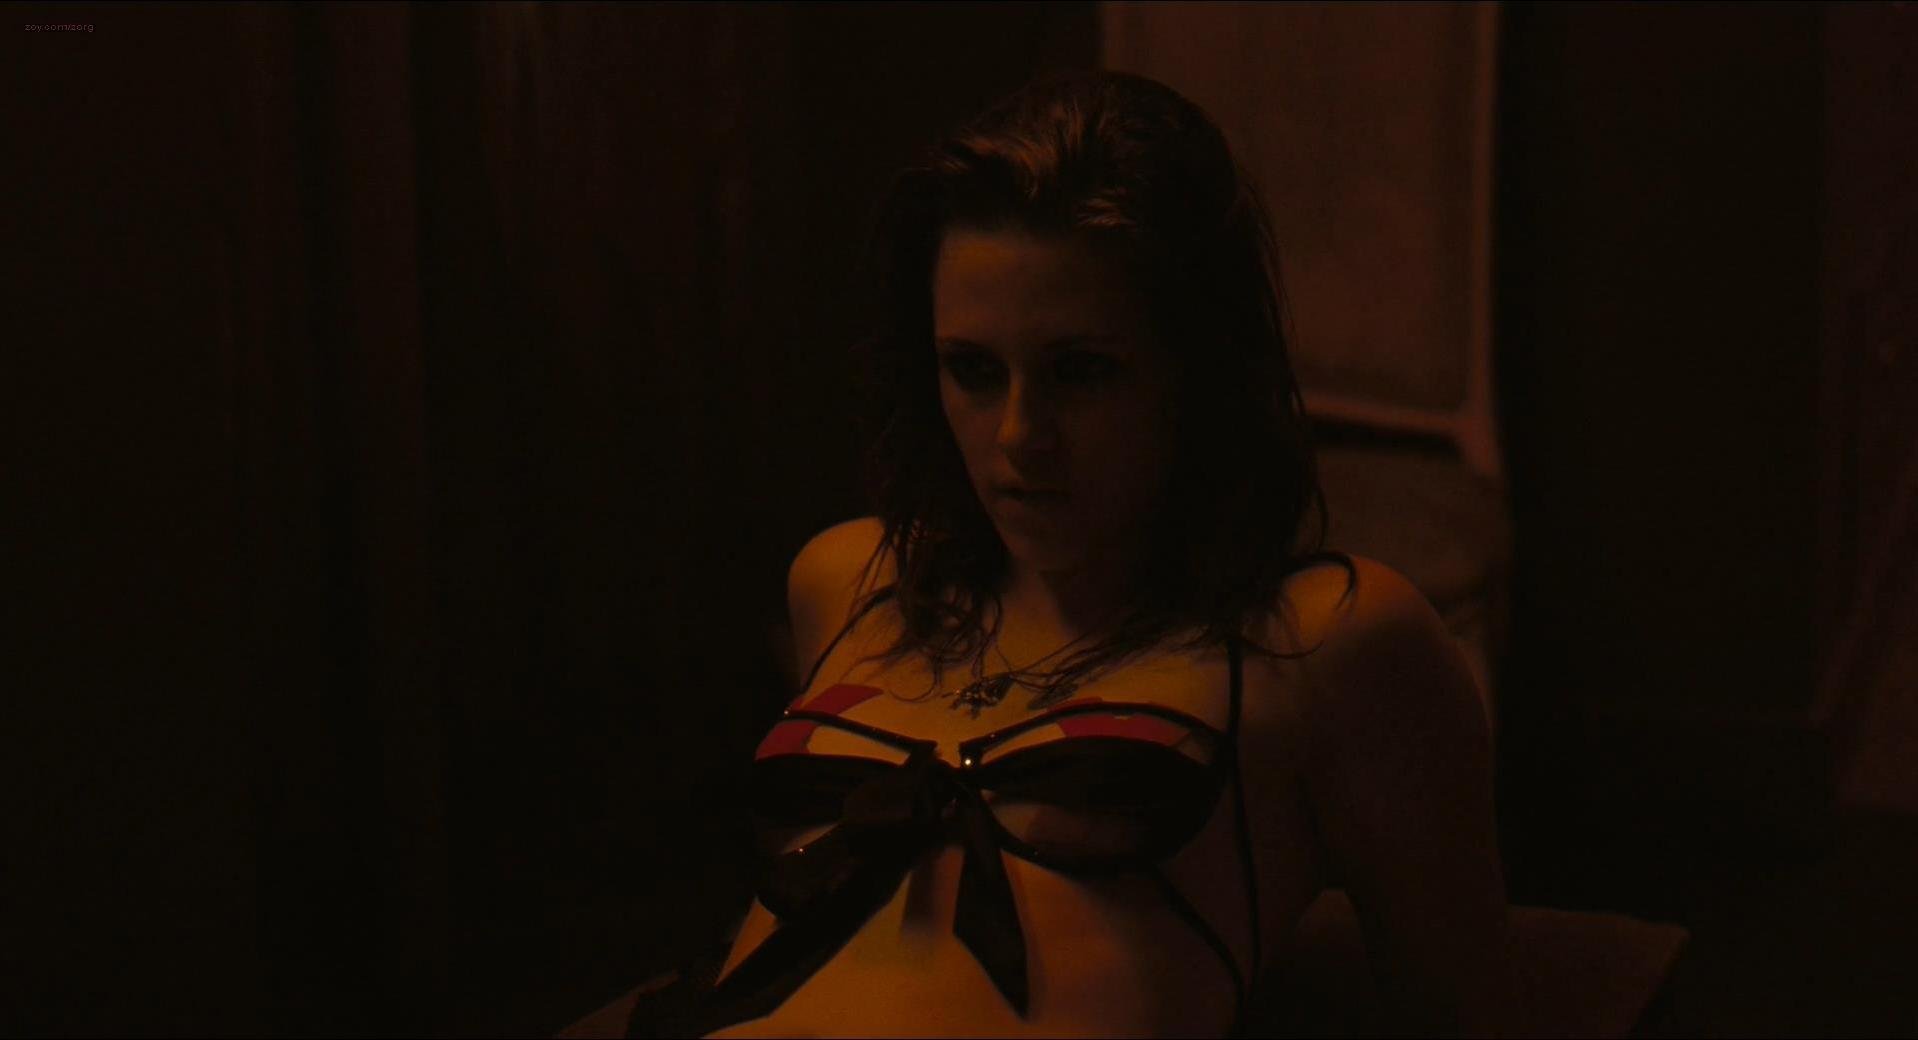 Kristen Stewart sexy - Welcome to the Rileys (2010)